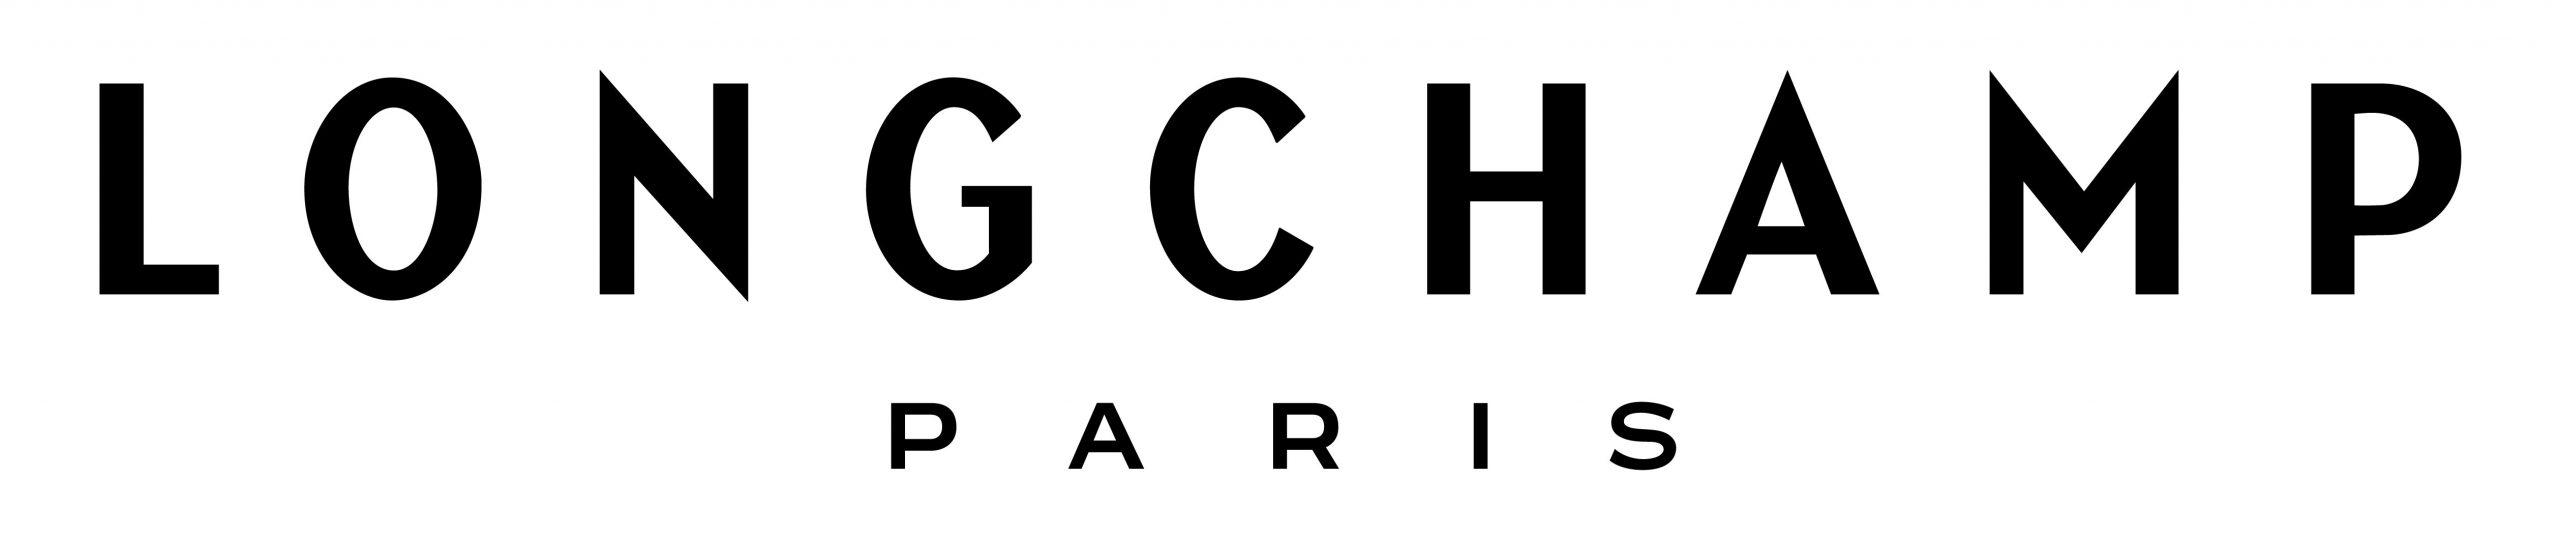 Longchamp Paris Logo By G&M Eyecare